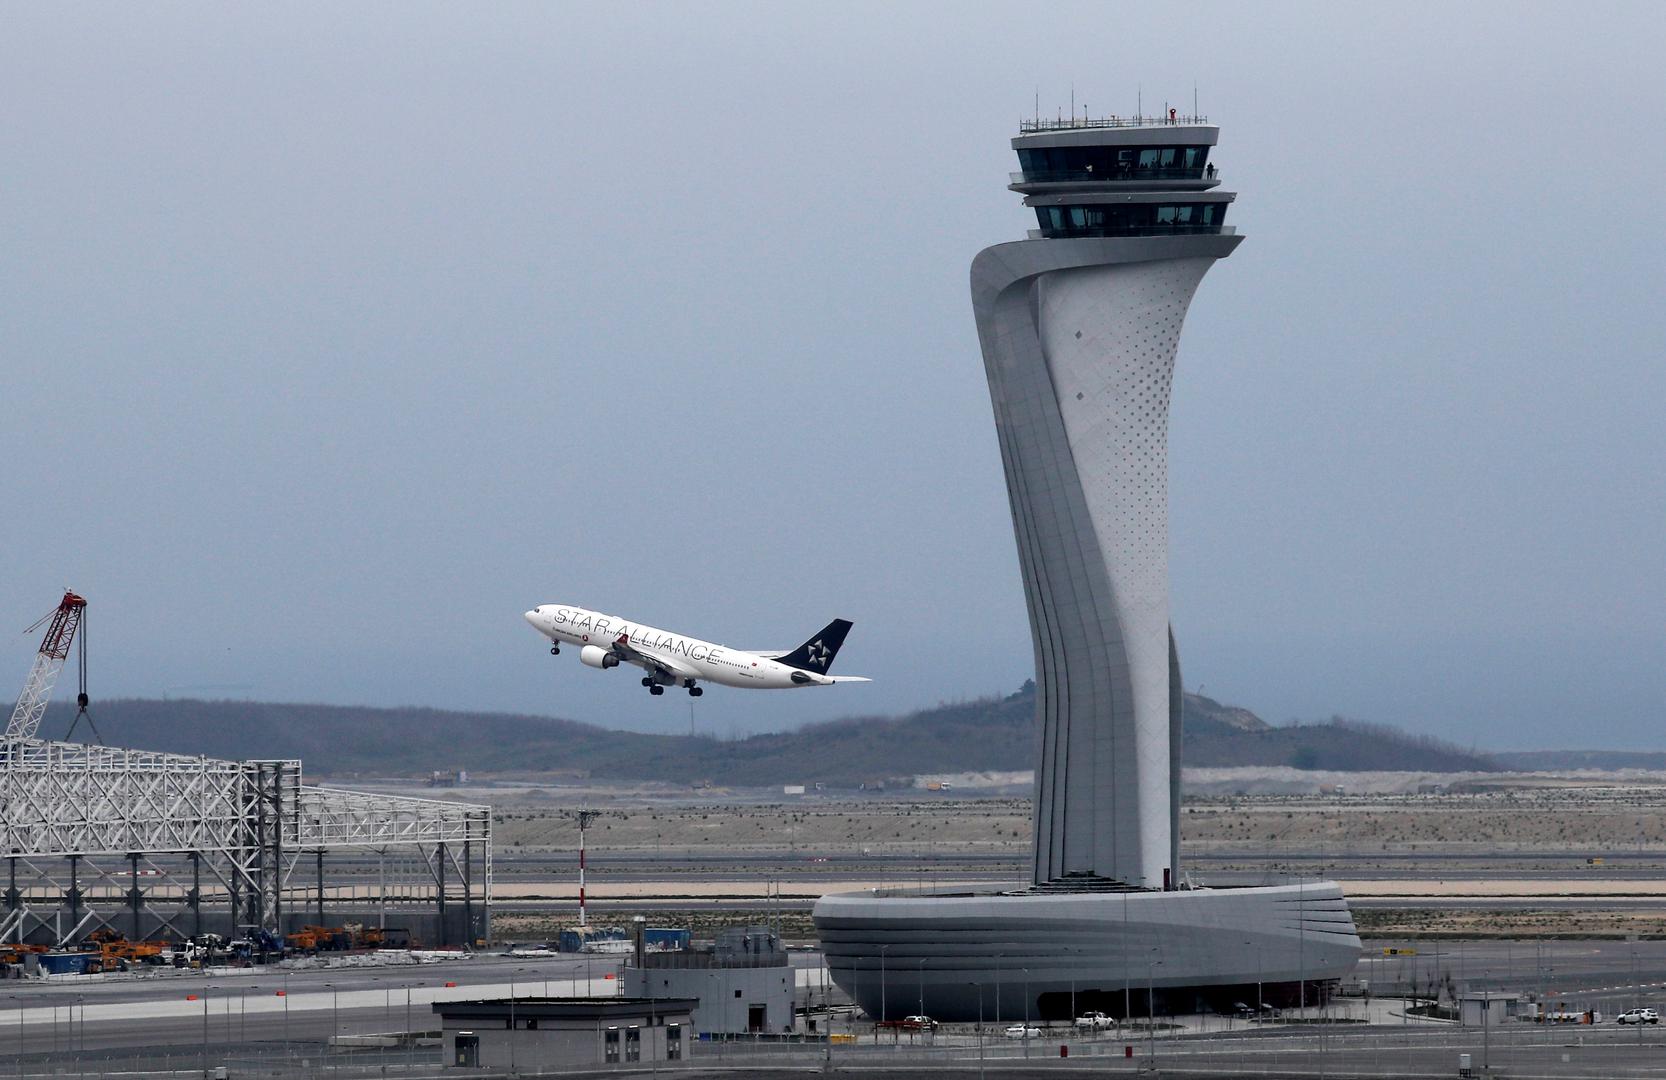 Zračna luka Ataturk u Istanbulu, koja se smatrala jednom od najprometnijih zračnih luka u svijetu sa 70 milijuna putnika godišnje, prestala je s radom 6. travnja, a svi komercijalni letovi prebačeni su na novu međunarodnu zračnu luku u Turskoj, Aerodrom Istanbul.